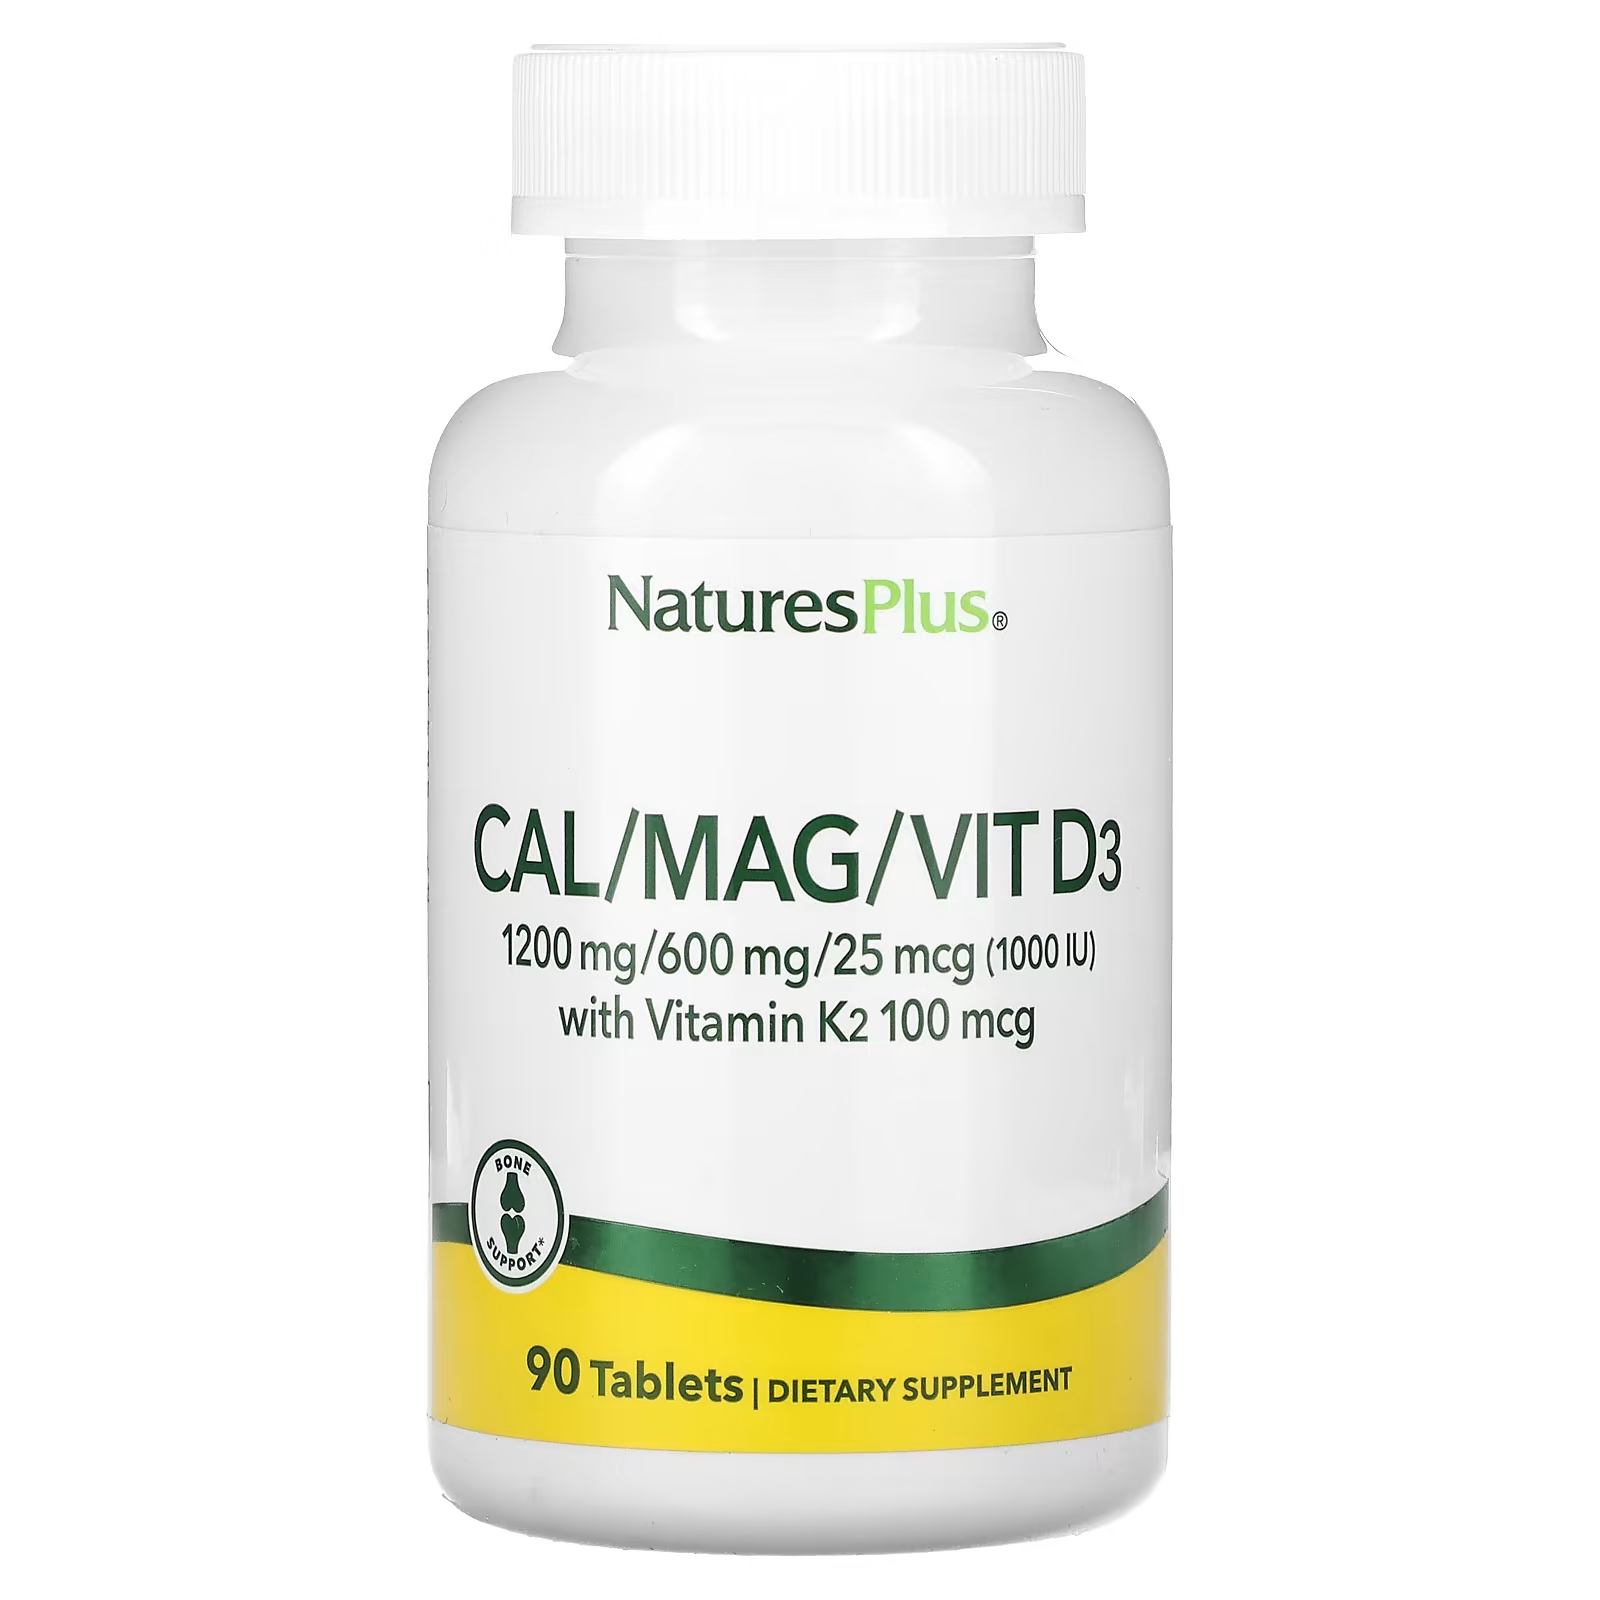 Пищевая добавка NaturesPlus Кальций-магний-витамин D3 с витамином K2, 90 таблеток цена и фото